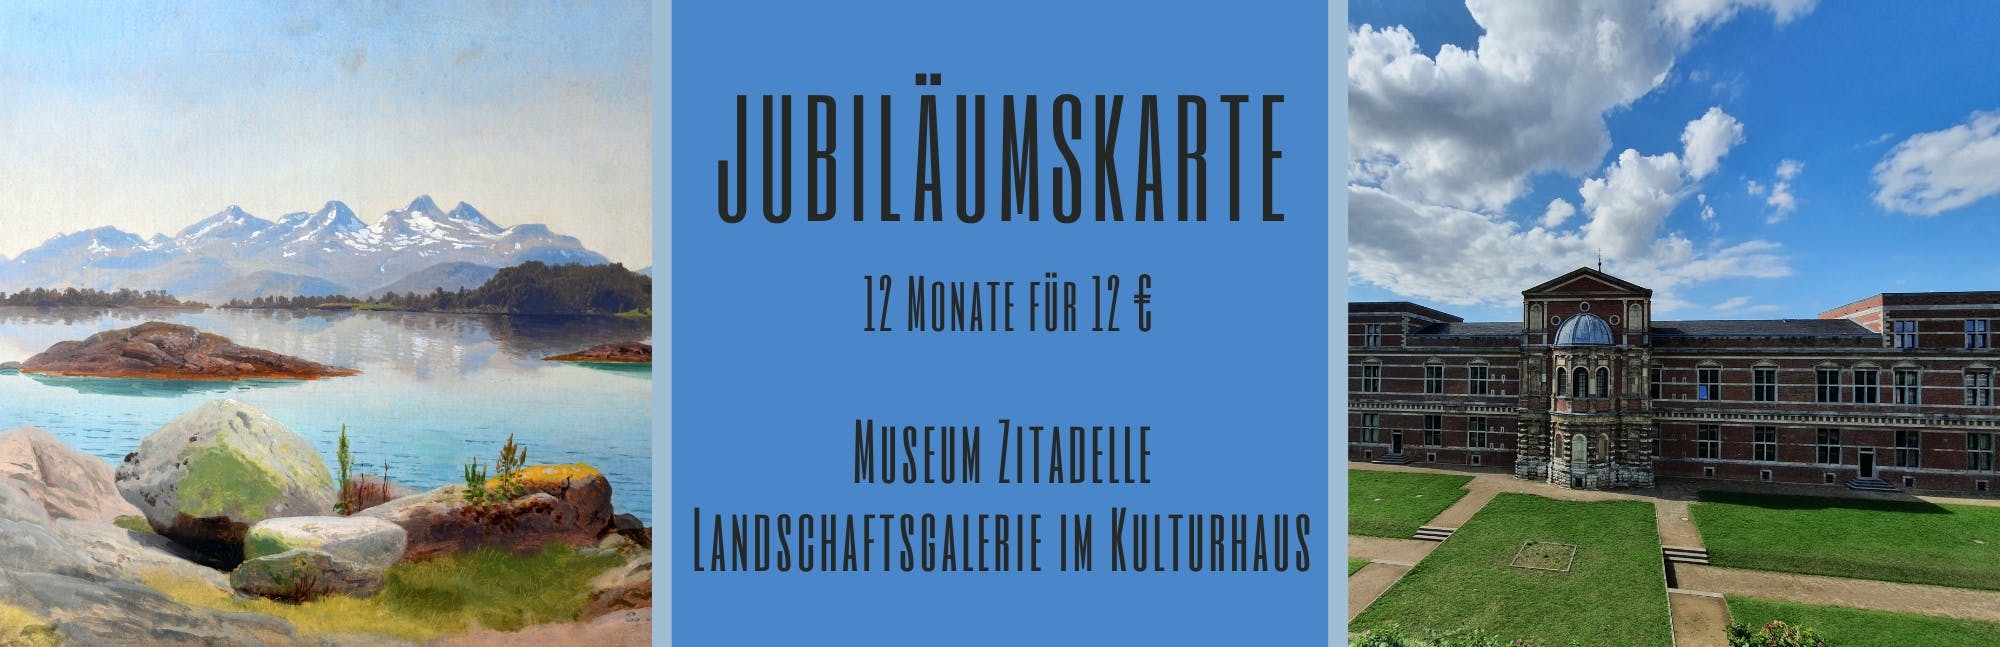 Jubiläumskarte Museum